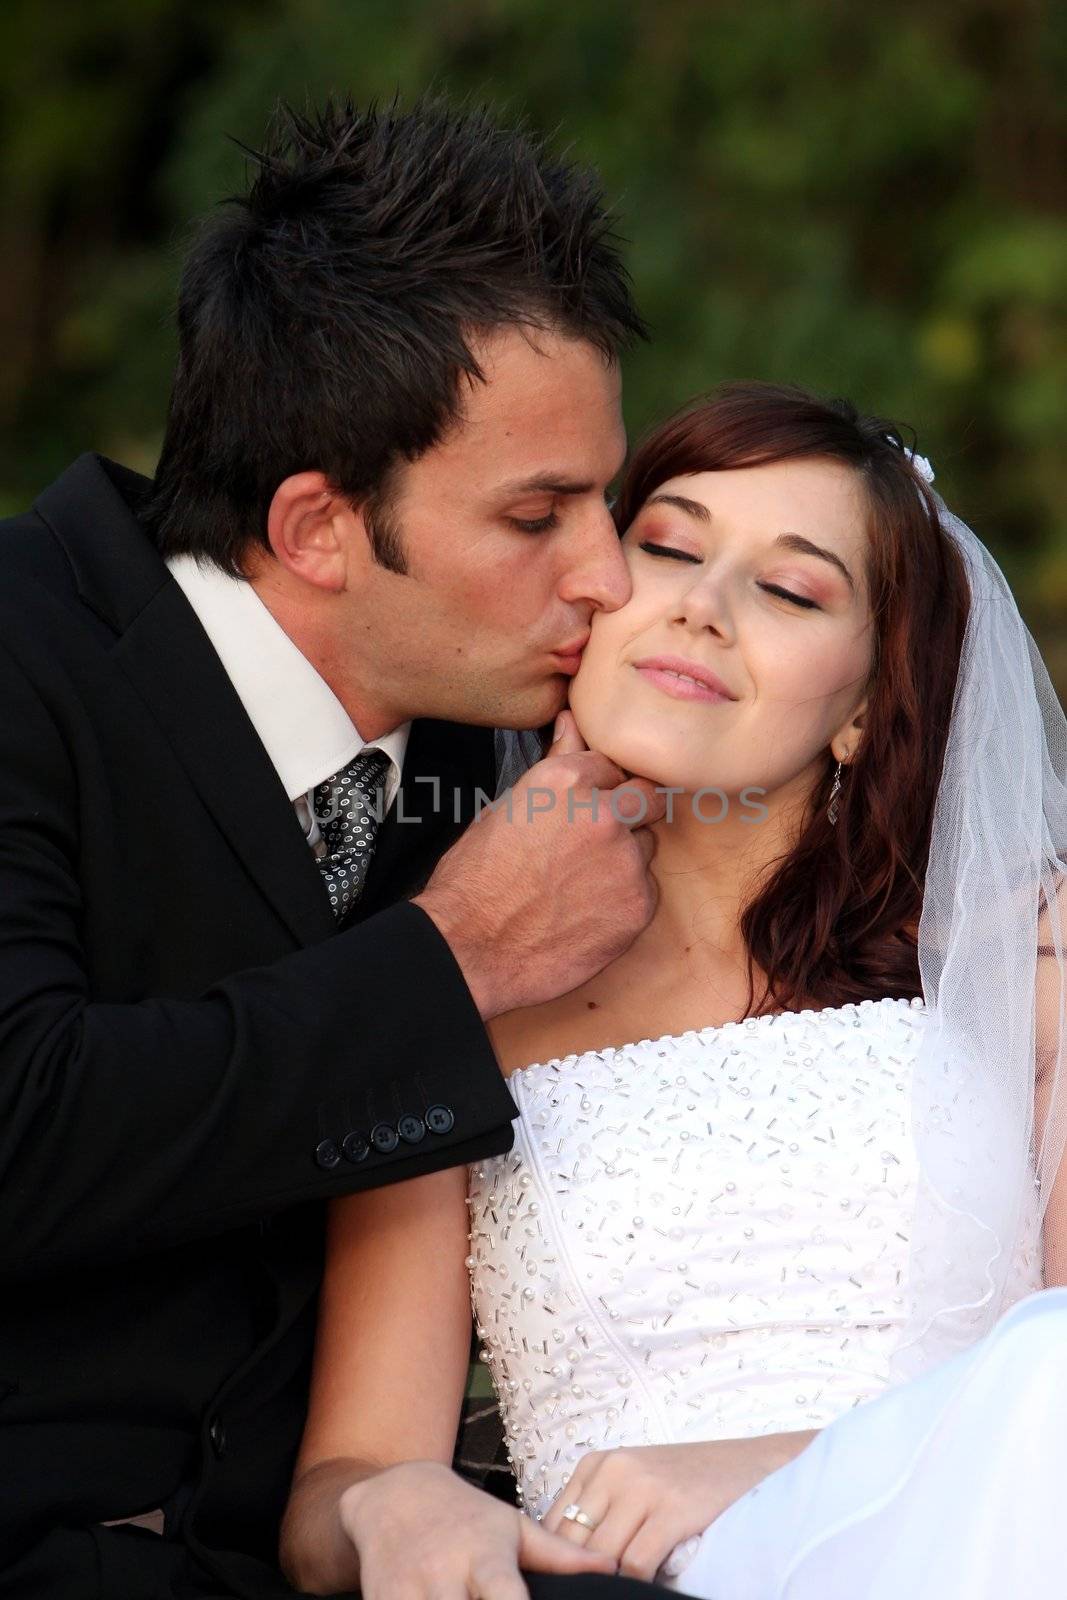 Wedding Kiss by fouroaks